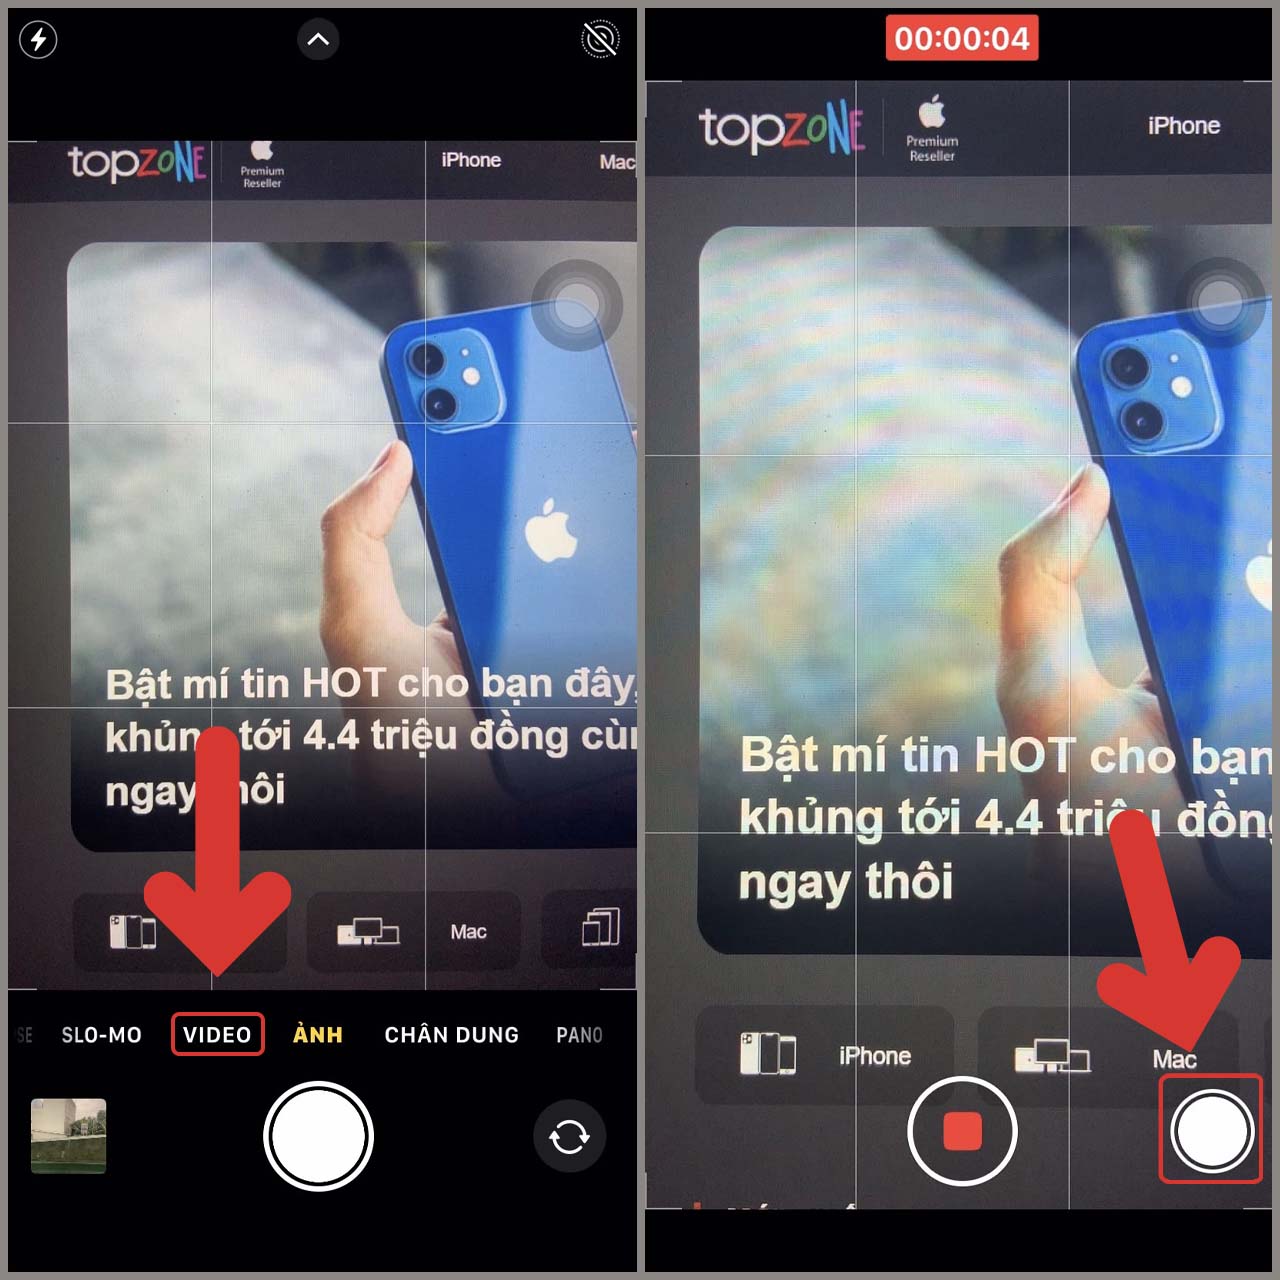 Cách tắt âm thanh chụp ảnh iPhone đơn giản, bạn đã biết mẹo này chưa?